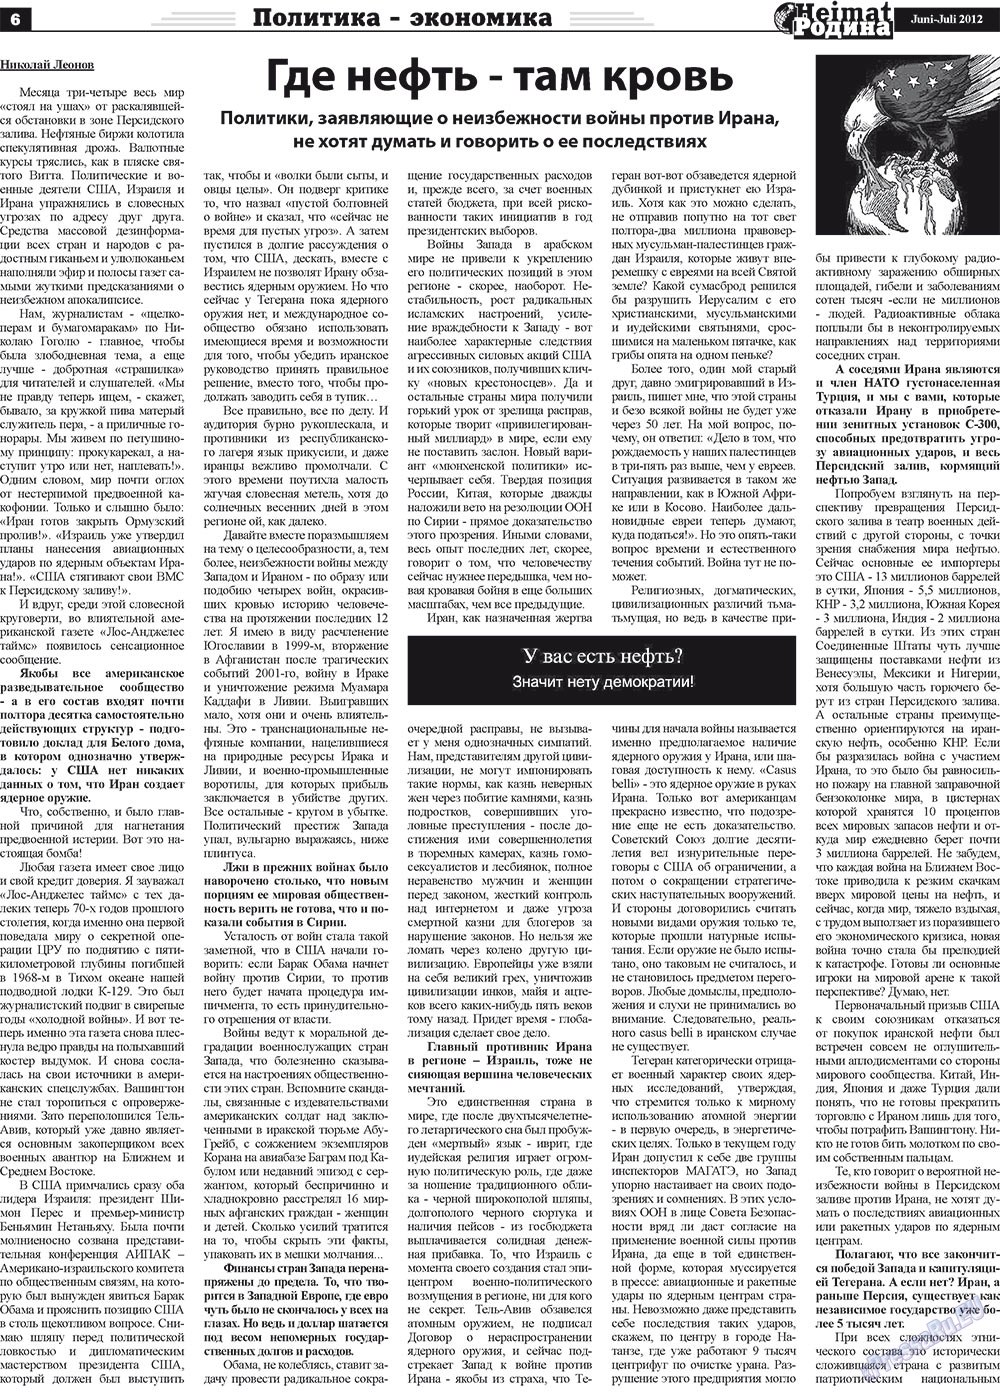 Heimat-Родина (газета). 2012 год, номер 5, стр. 6